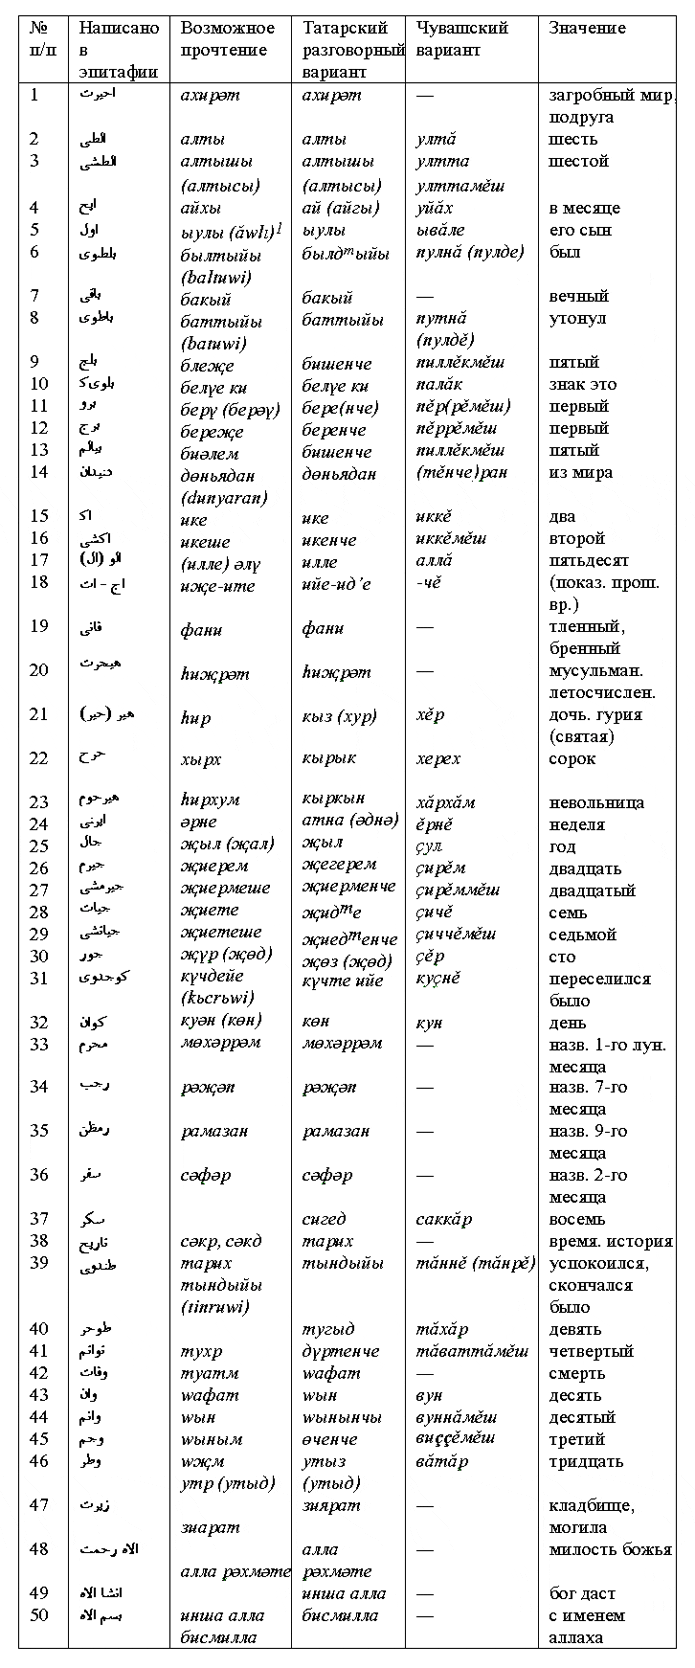 Таблица сравнения тюркского лексического состава 